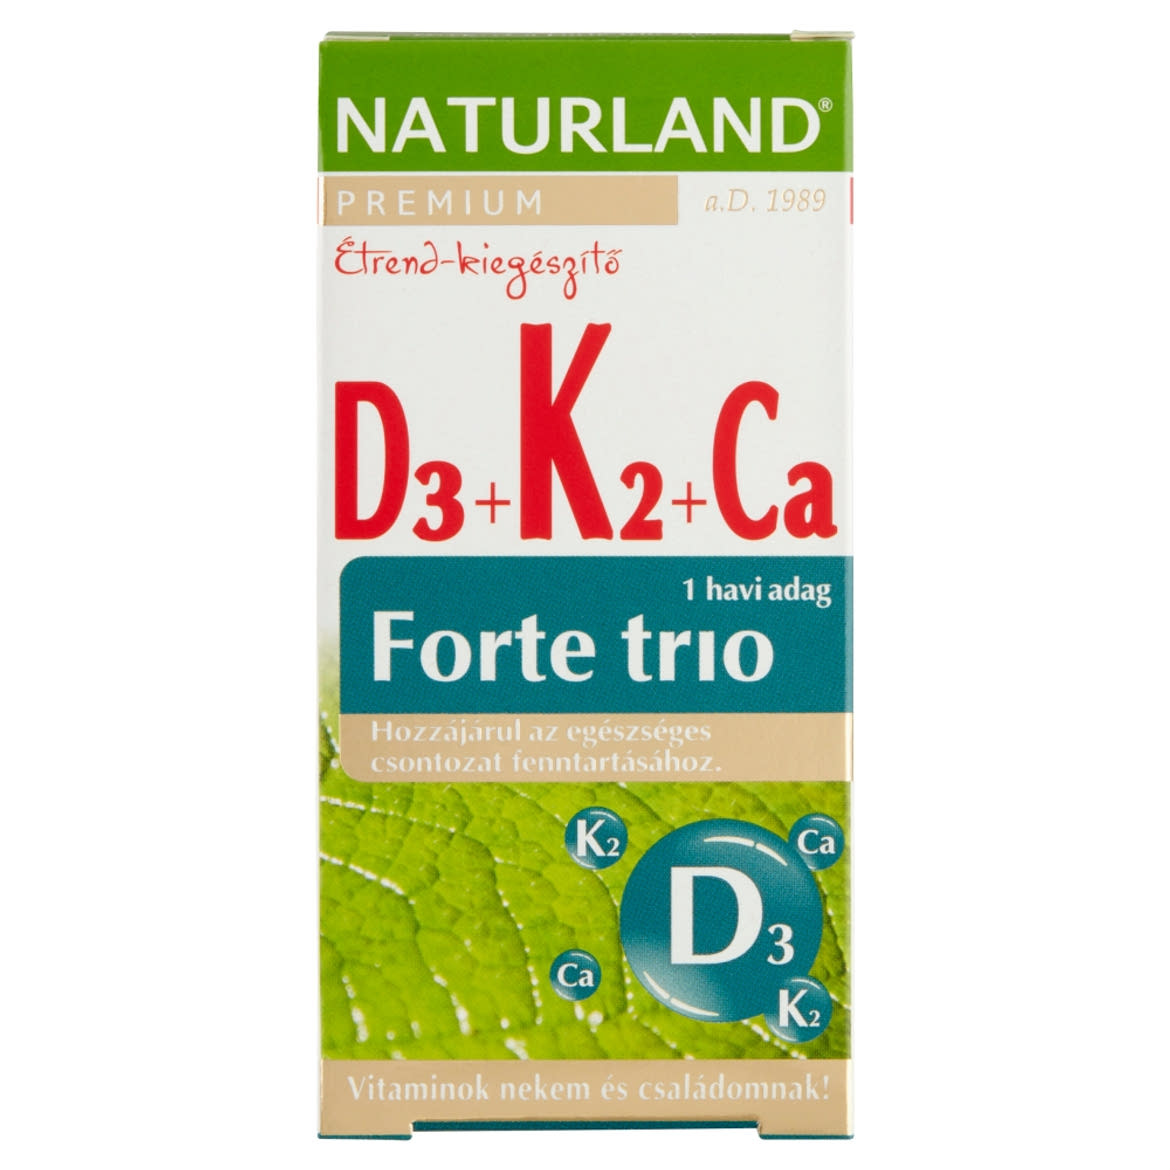 Naturland Premium D3 + K2 + Ca Forte Trio étrend-kiegészítő tabletta